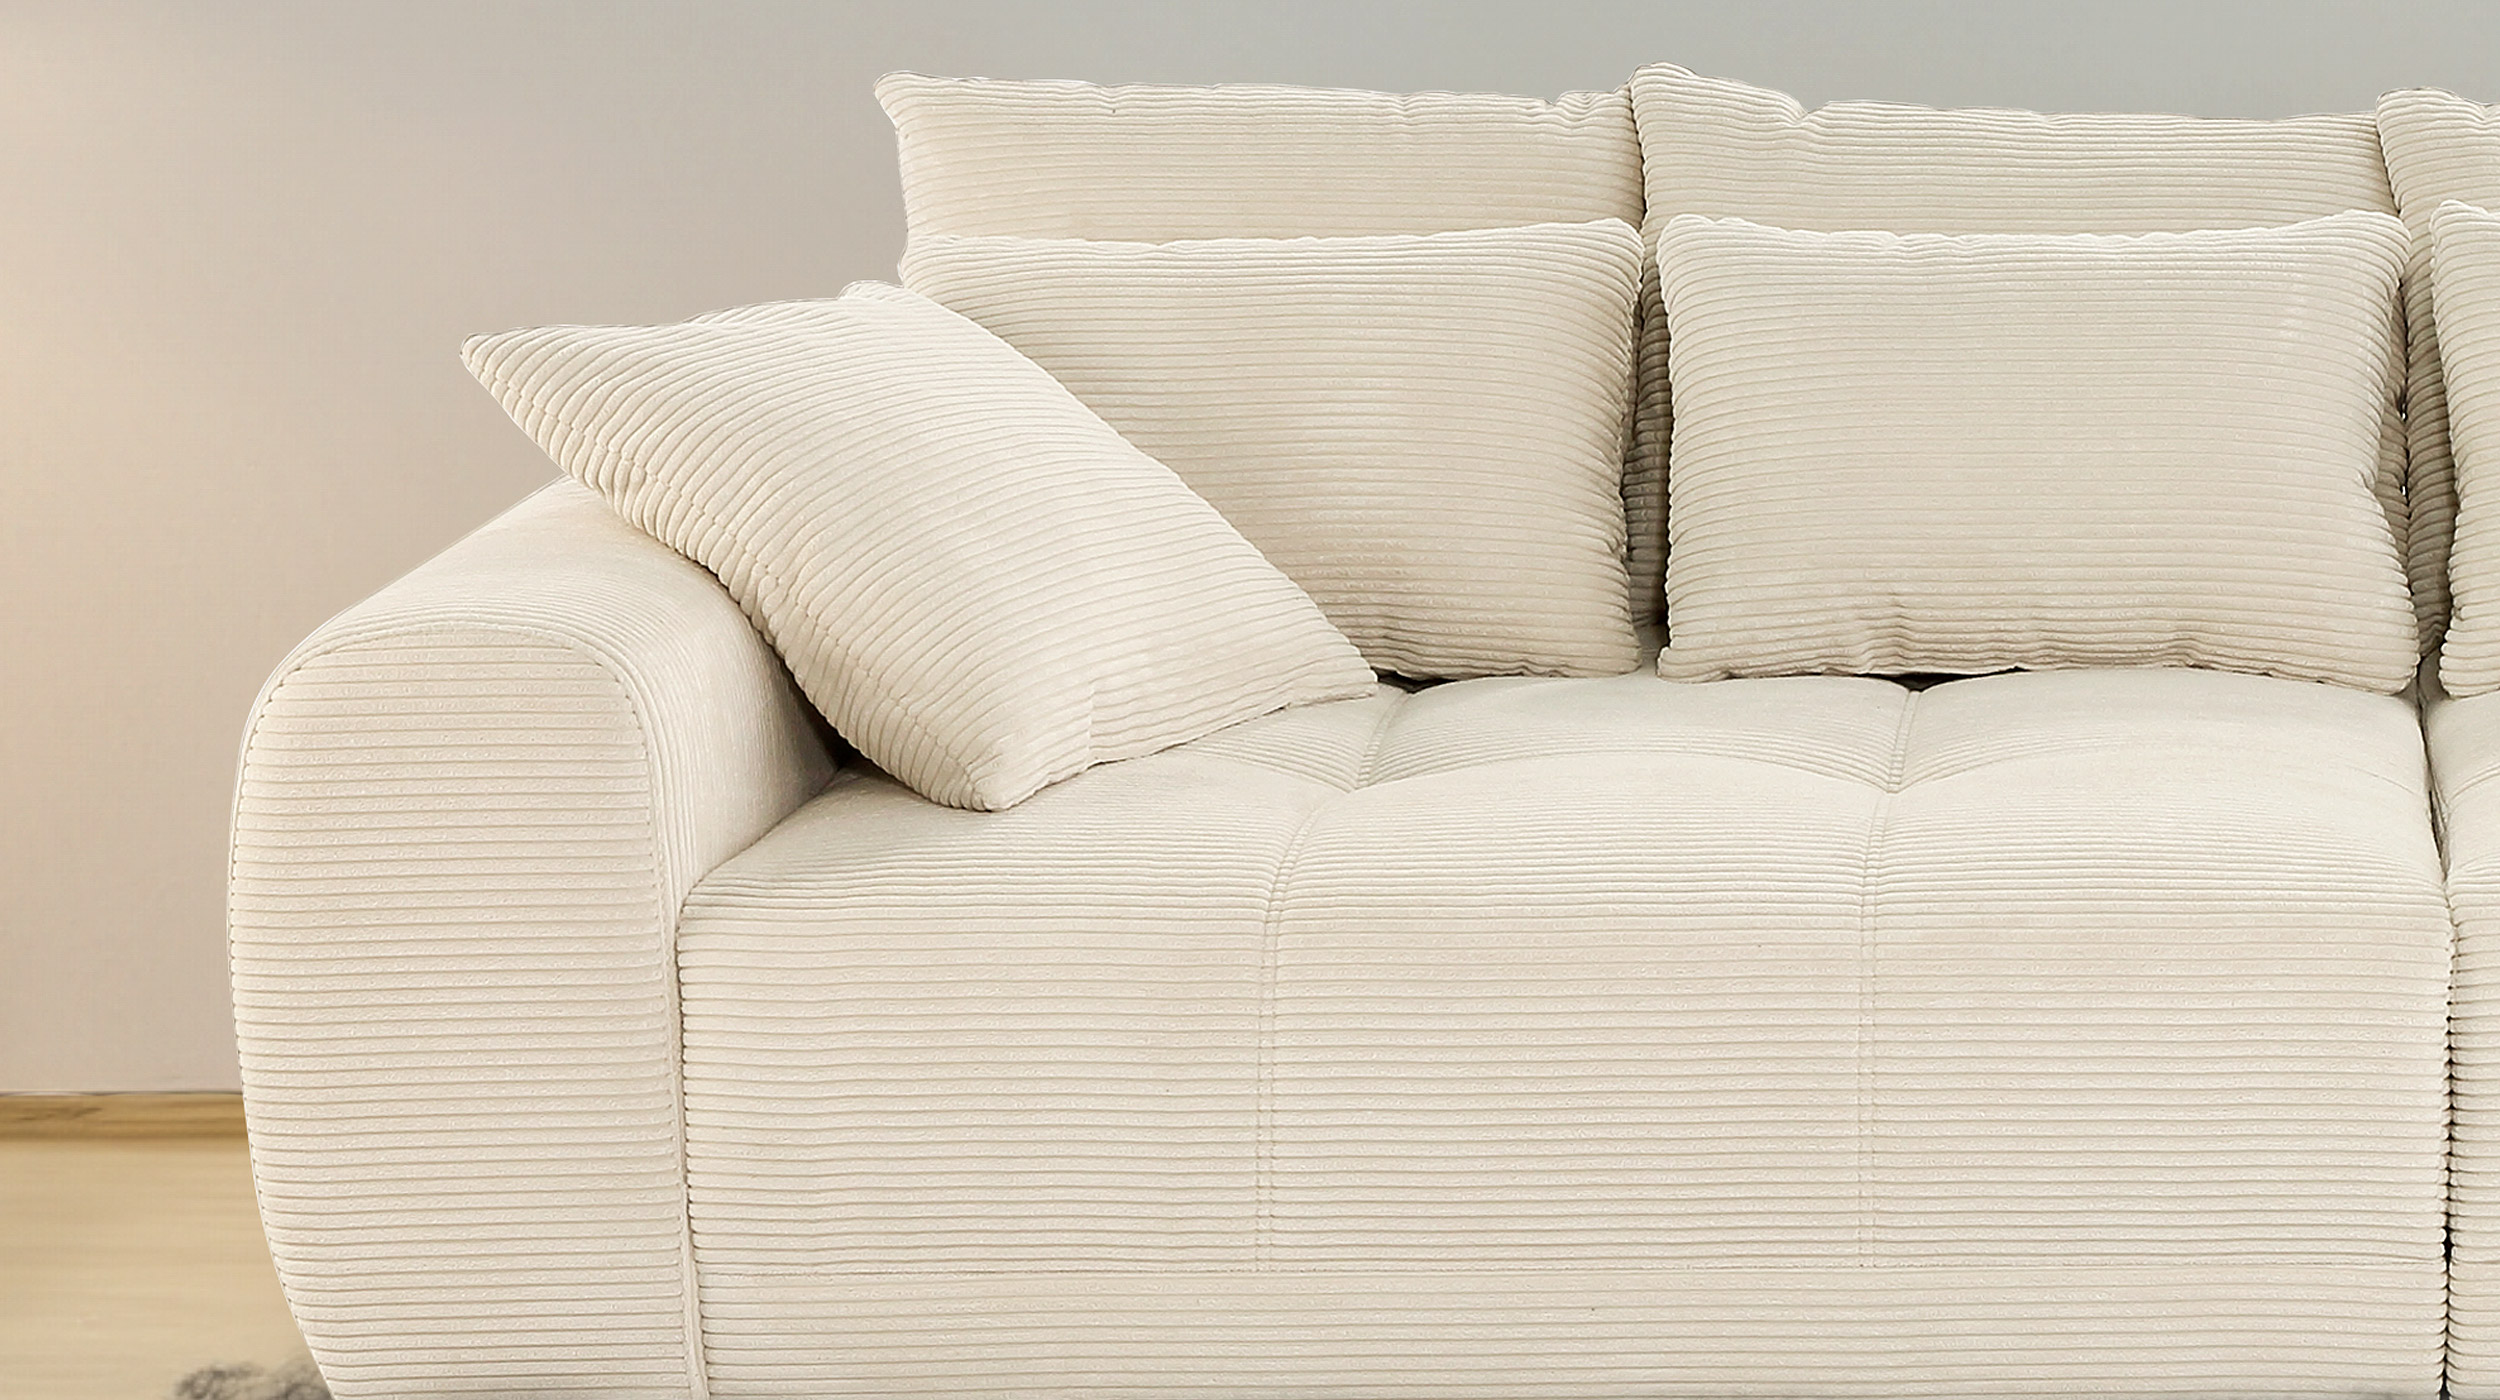 Big Sofa beige Cord 308 cm Federkernpolsterung - JANNI